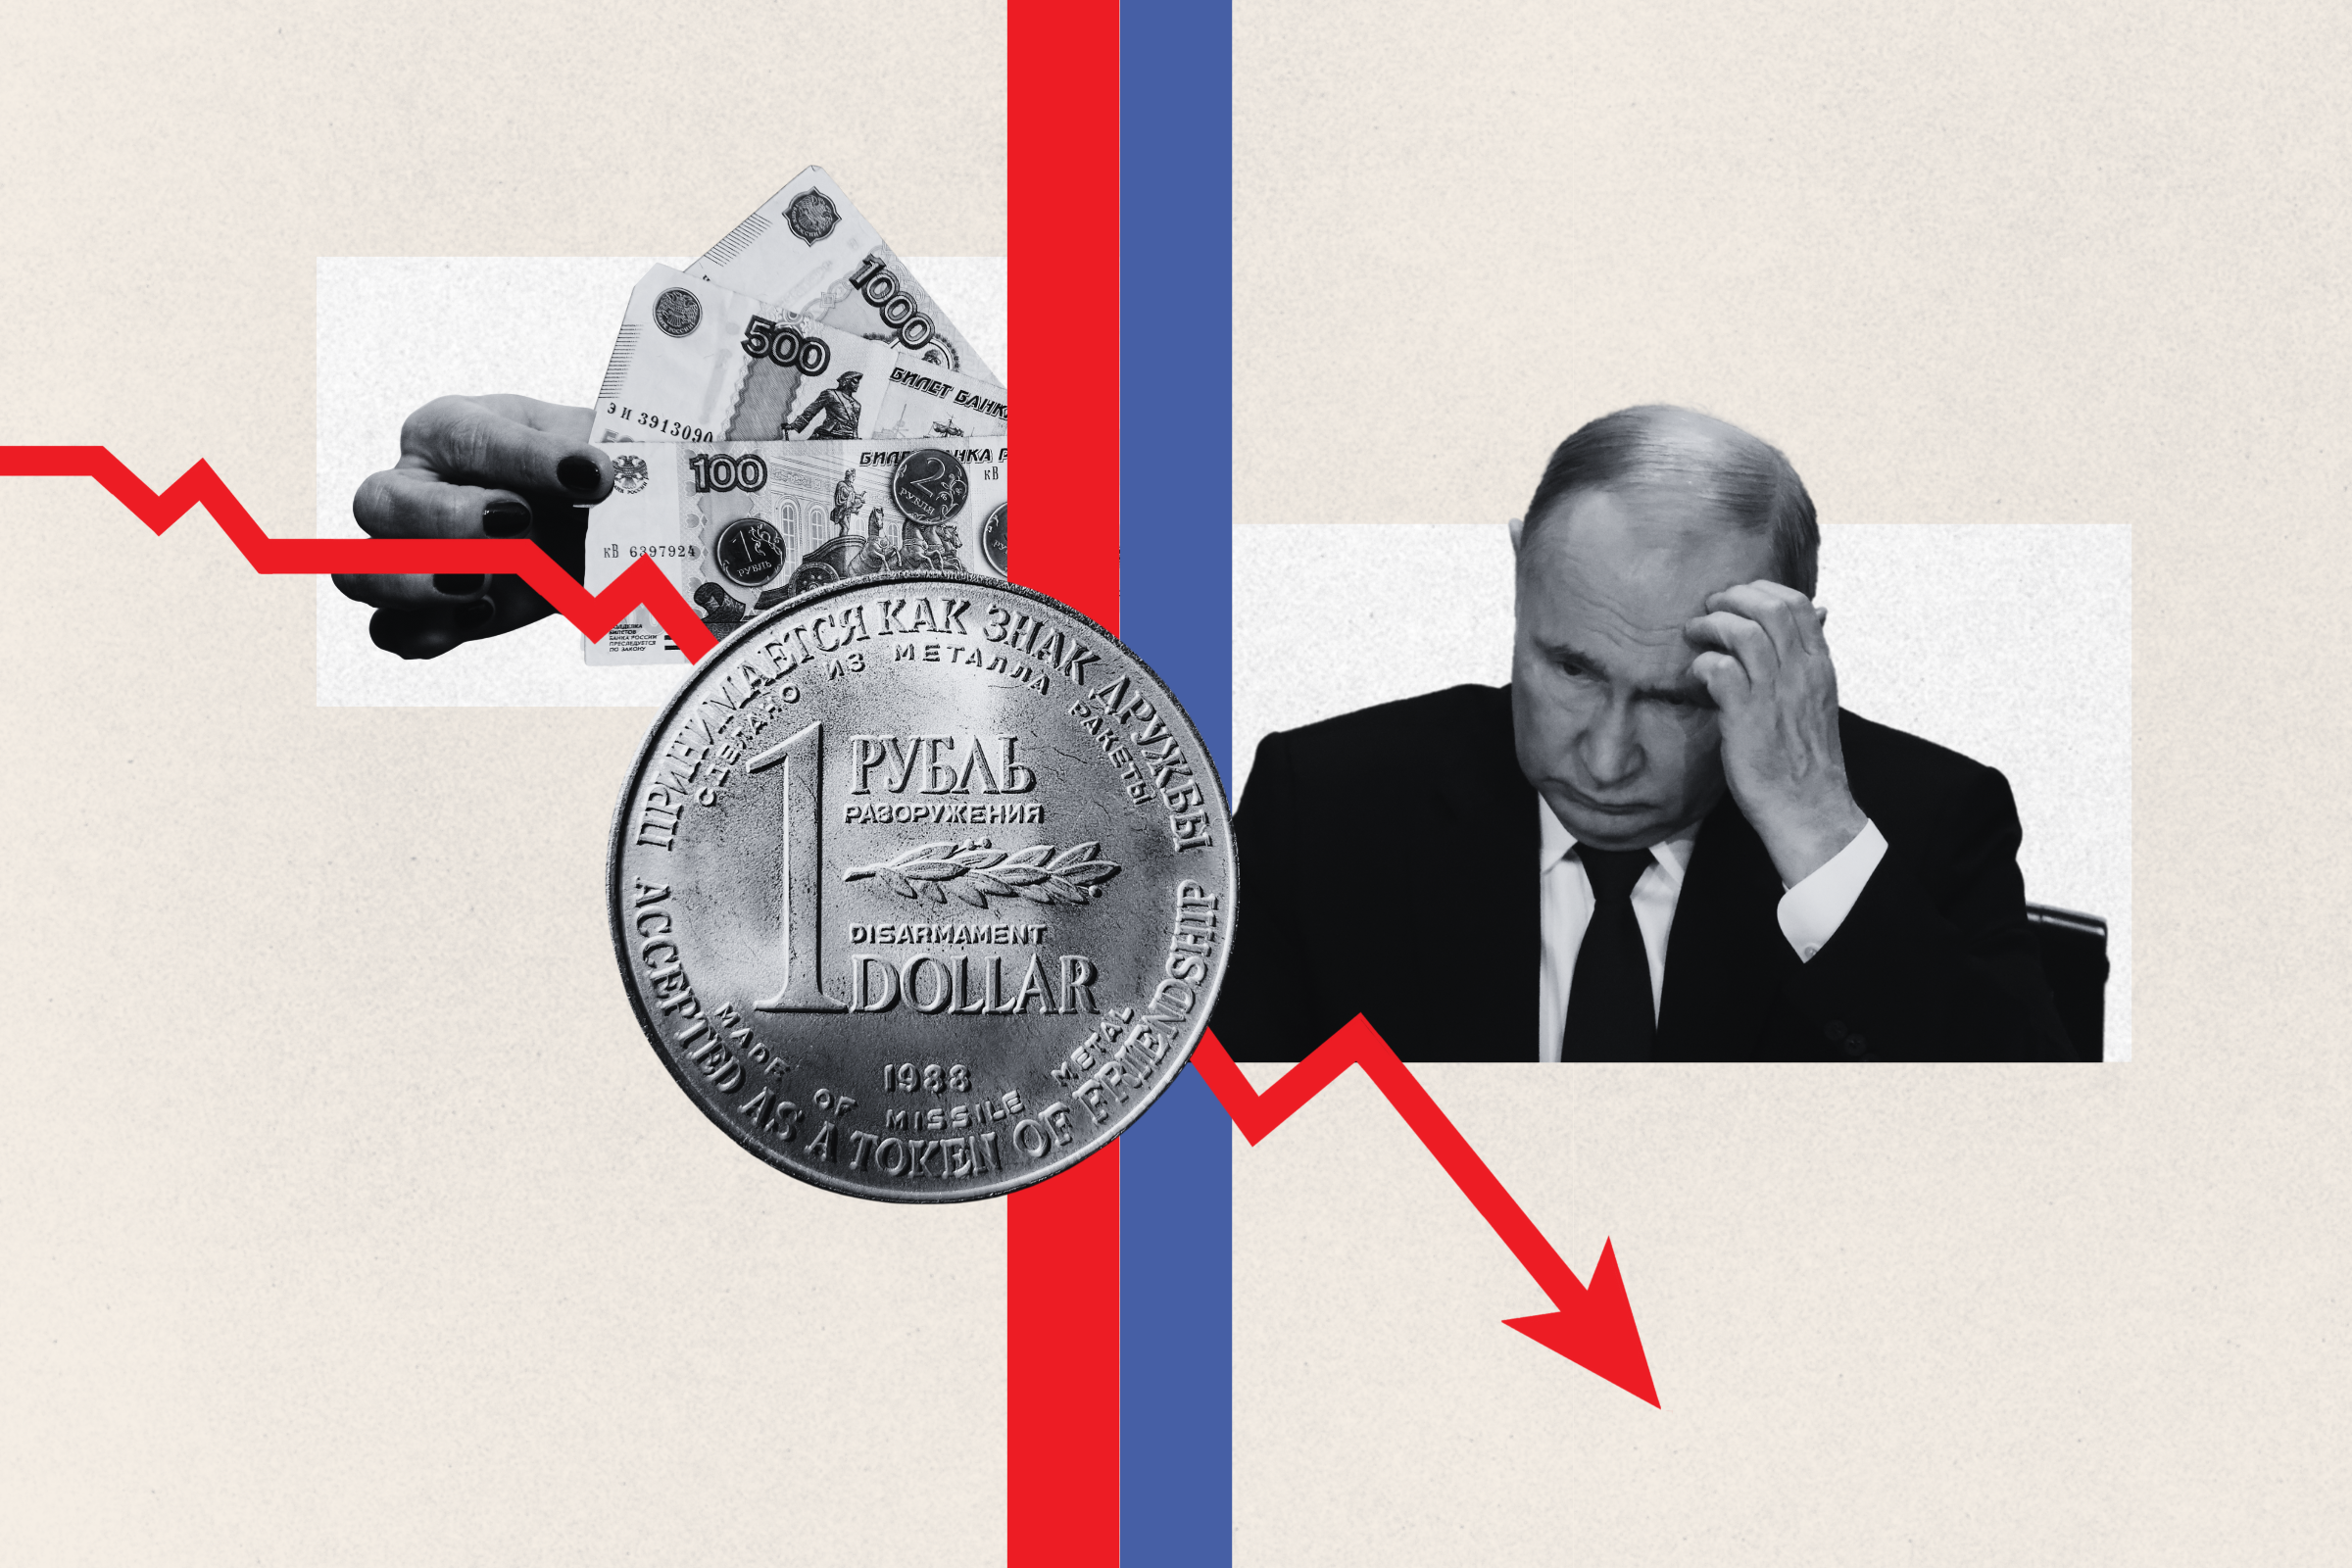 Le pari économique de la Chine pourrait neutraliser le stratagème du dollar de Poutine